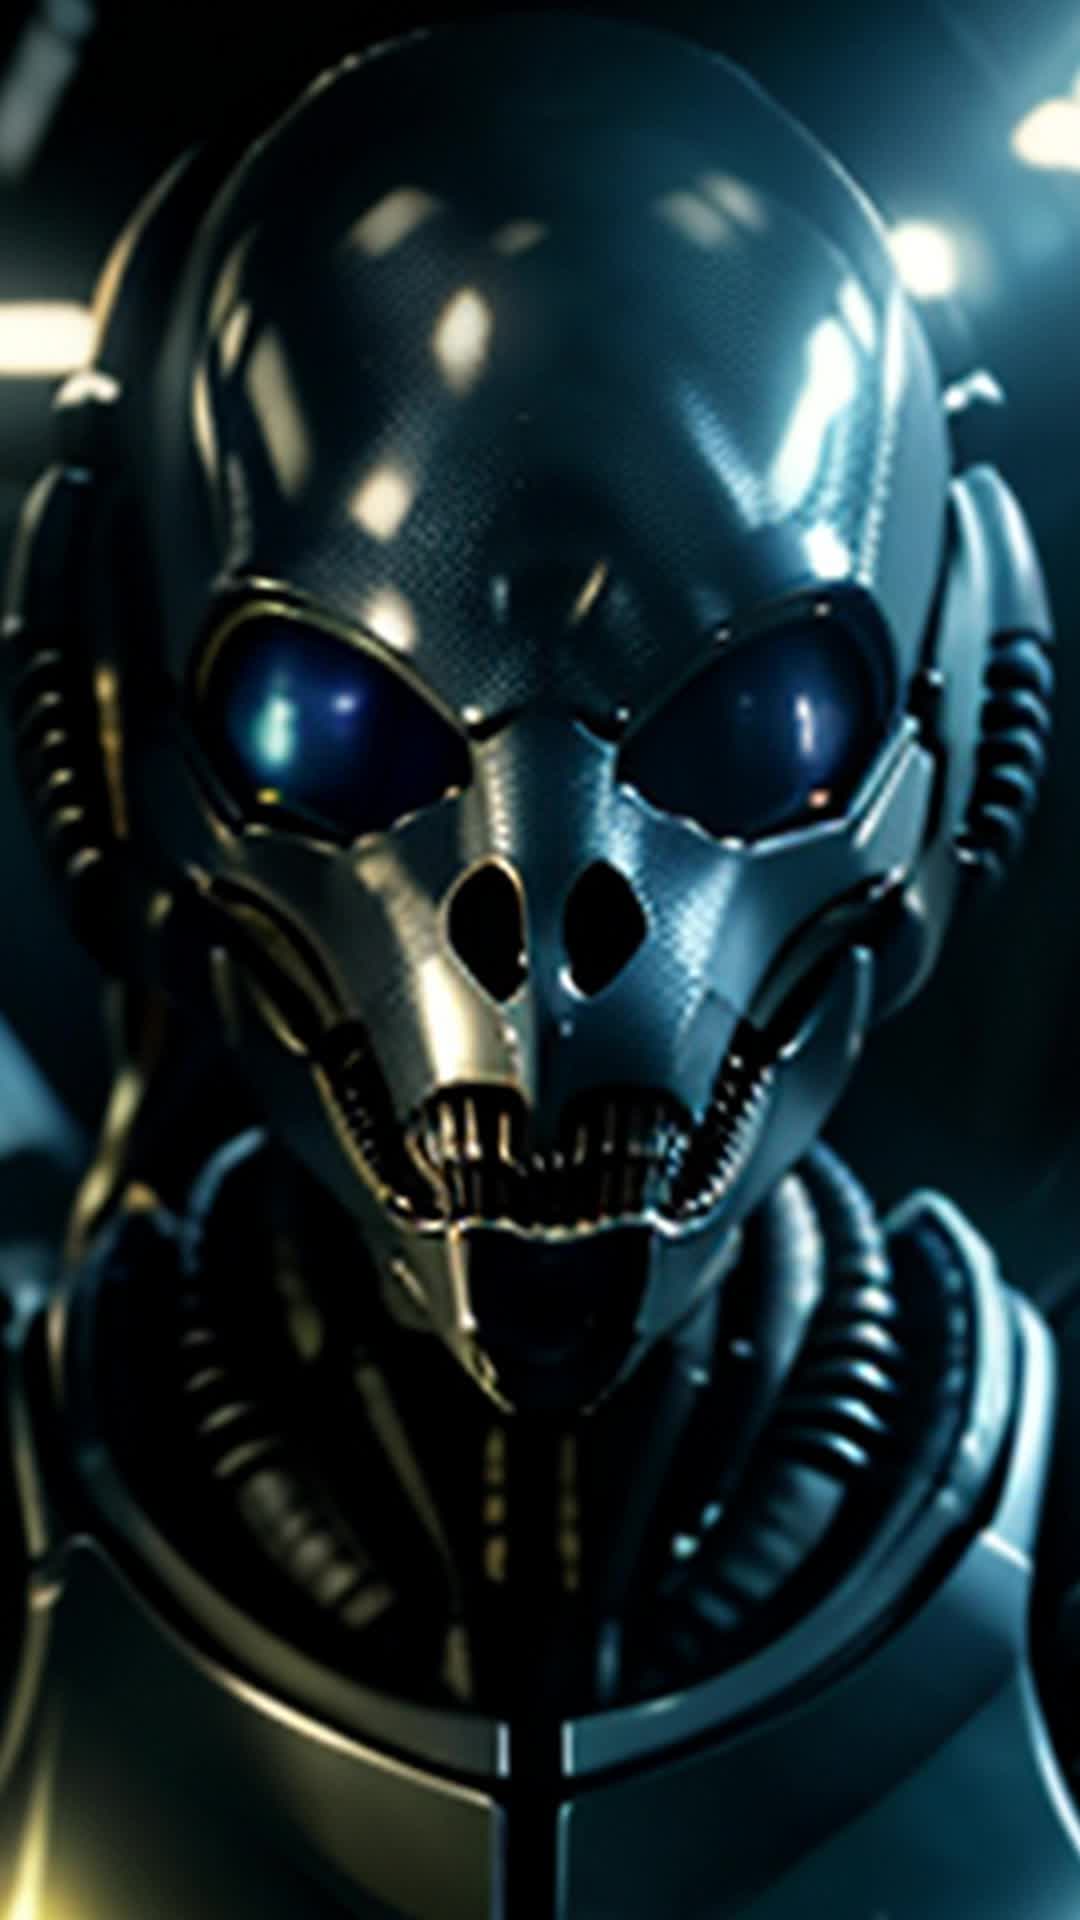 Alien vs predator,  science fiction, xenomorph, Predator, movie, 8k, cinematic lighting